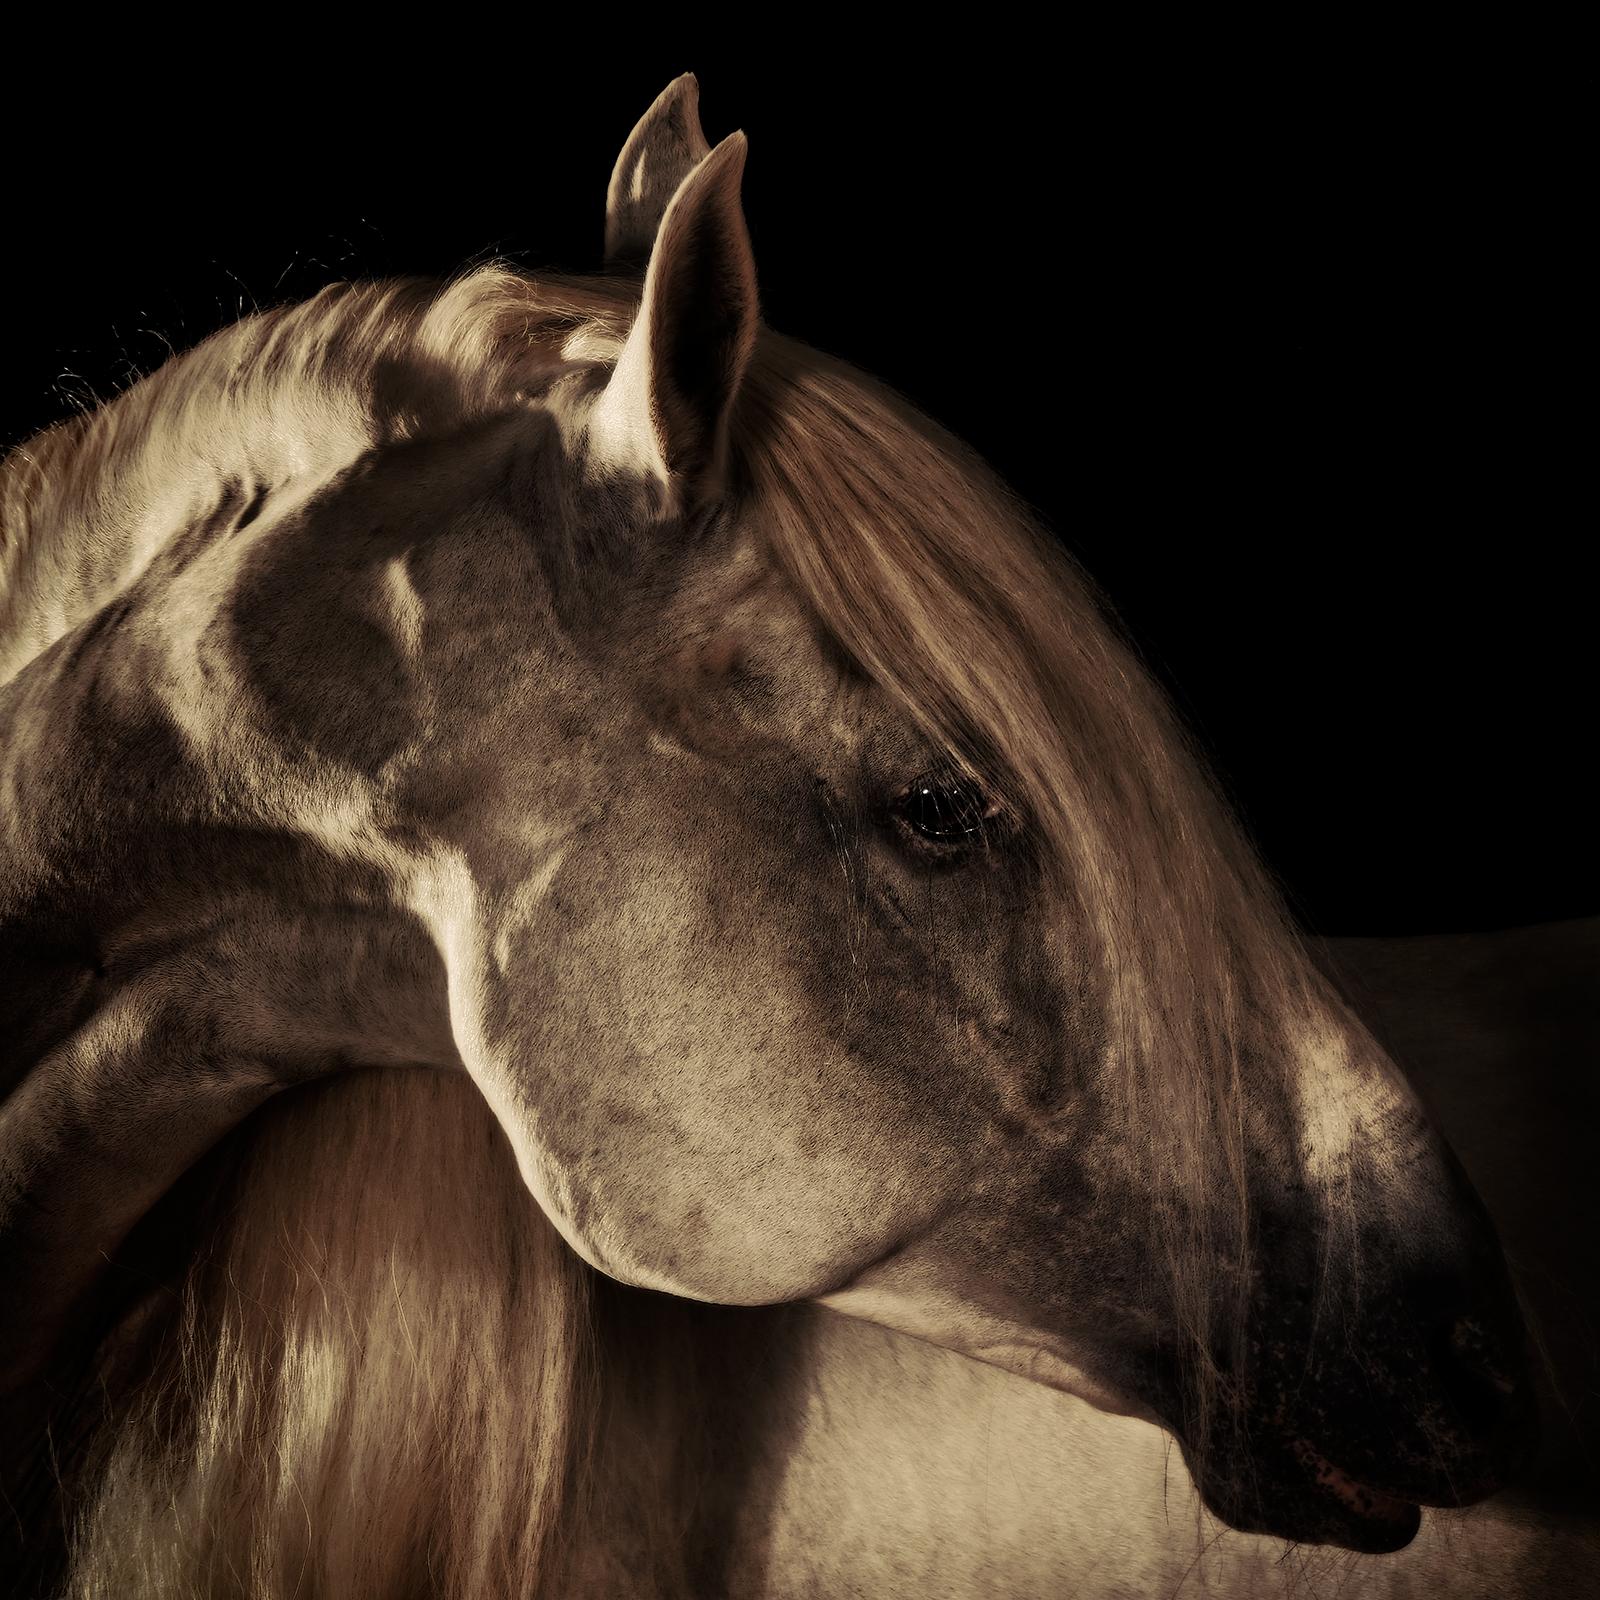 Horse 7 – signierter Tier-Kunstdruck in limitierter Auflage, quadratischer brauner, dunkler Farbe (Schwarz), Still-Life Photograph, von Peter Ridge